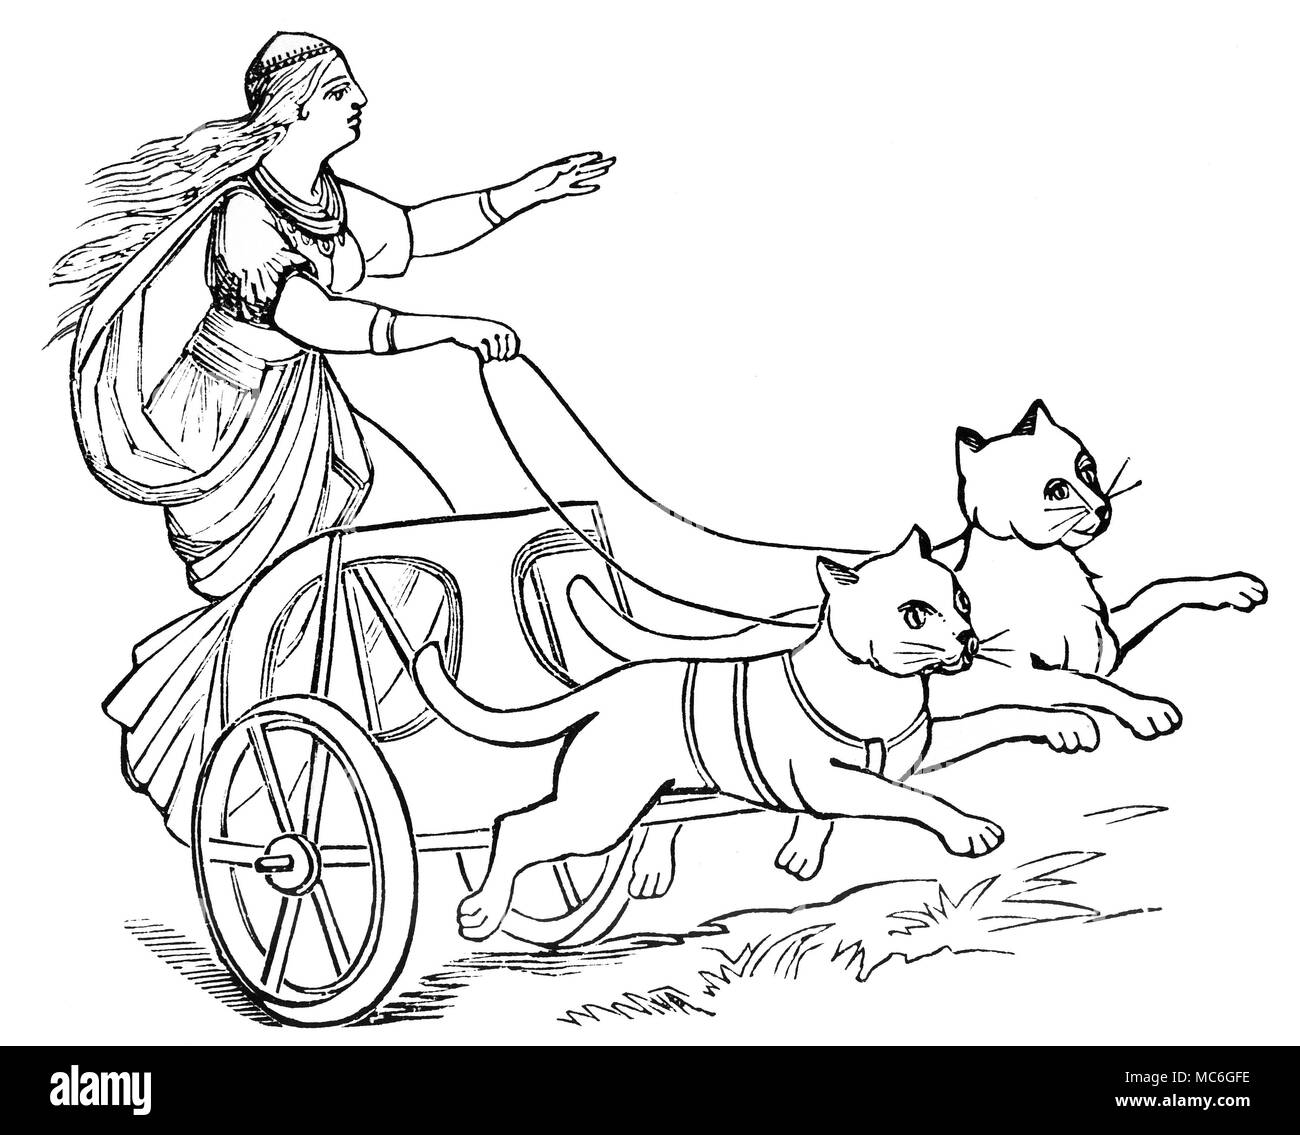 Mitología teutónica - Freya la diosa Freya, en su carro tirado por gatos. Freya, la esposa de Odin, era originalmente una diosa lunar. Además de ser una de las diosas madre, ella era también una sibila, dotada con el poder de profecía. En algunas imágenes, Freya se dibuja en un carro tirado por dos verracos. Siglo xix grabado en madera. Foto de stock